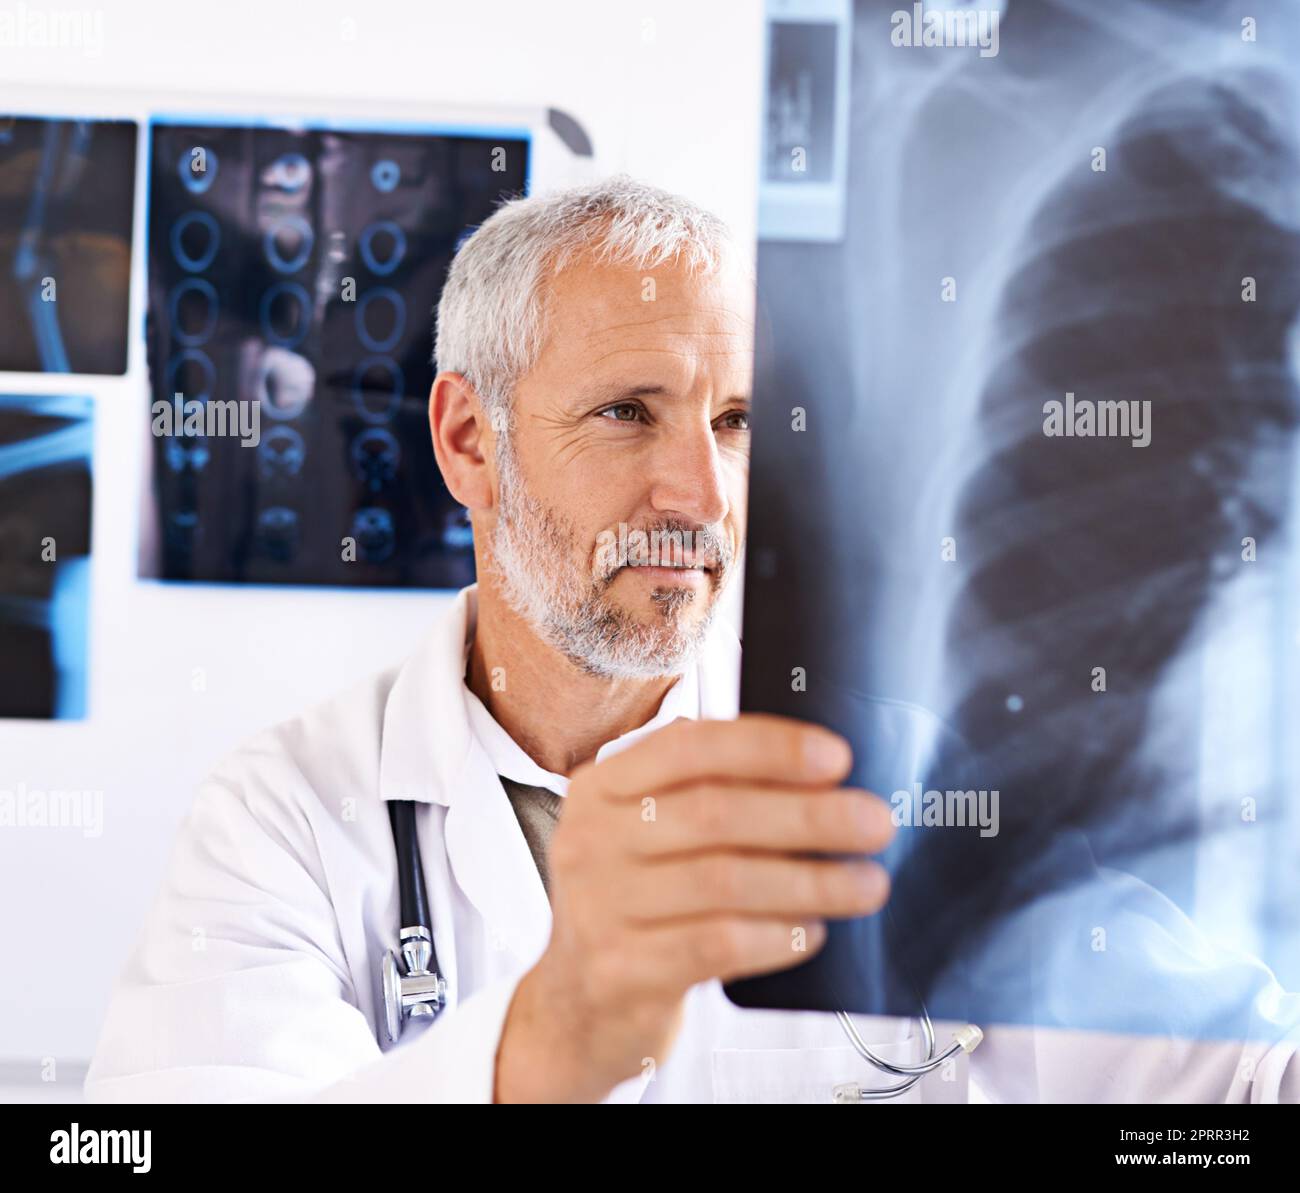 HES un radiologo esperto. Un medico di sesso maschile maturo che guarda un'immagine radiografica in un ospedale. Foto Stock